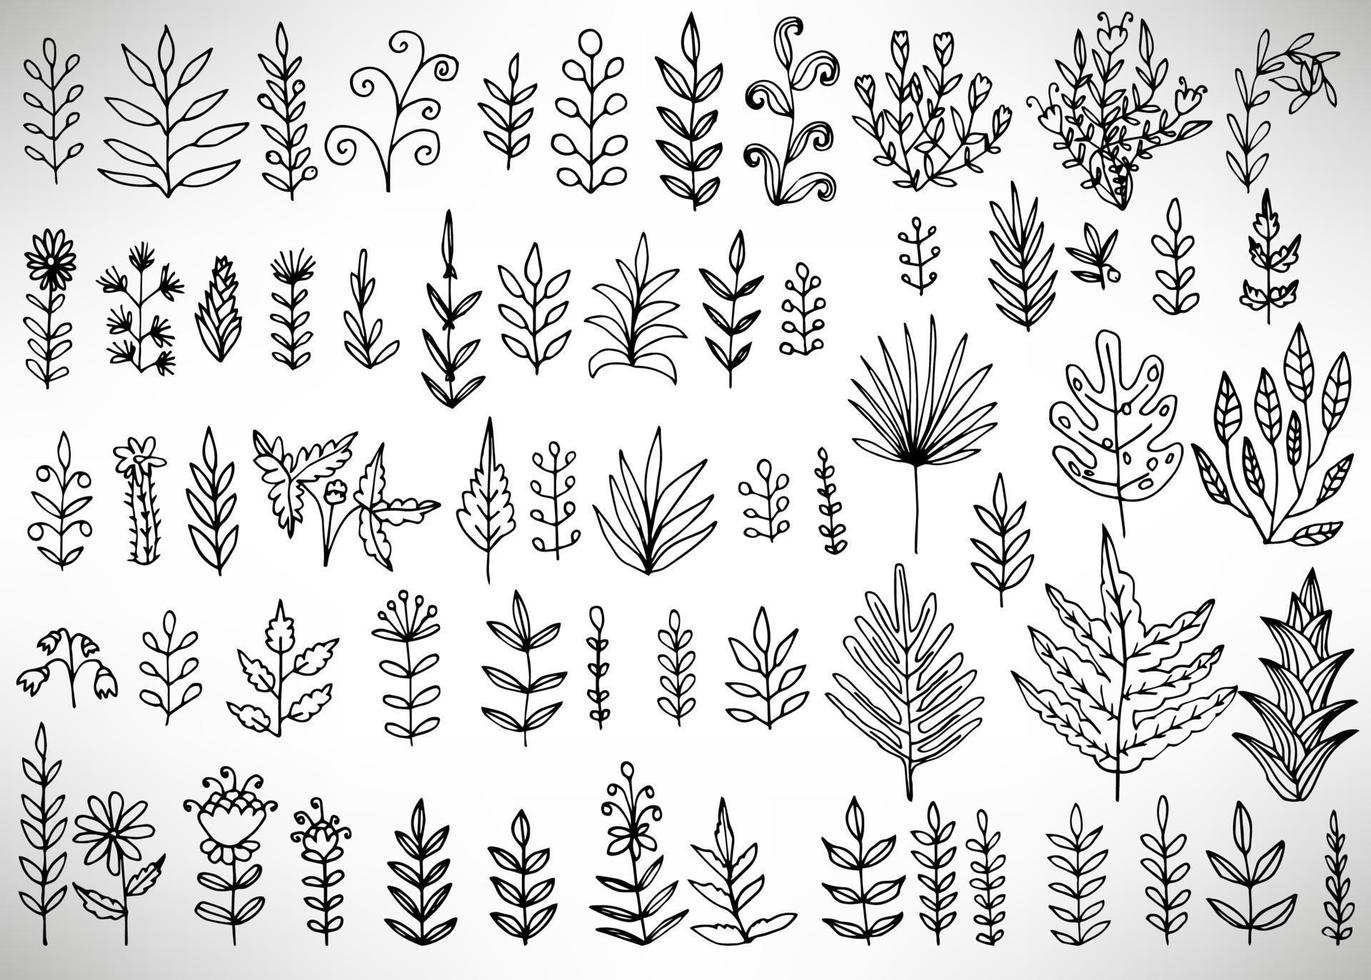 Blumenset aus handgezeichneten Elementen mit schwarzem Umriss, Baumzweig, Busch, Pflanze, tropische Blätter, Blumen, Äste, Blütenblätter einzeln auf Weiß. Sammlung für Design. vektor